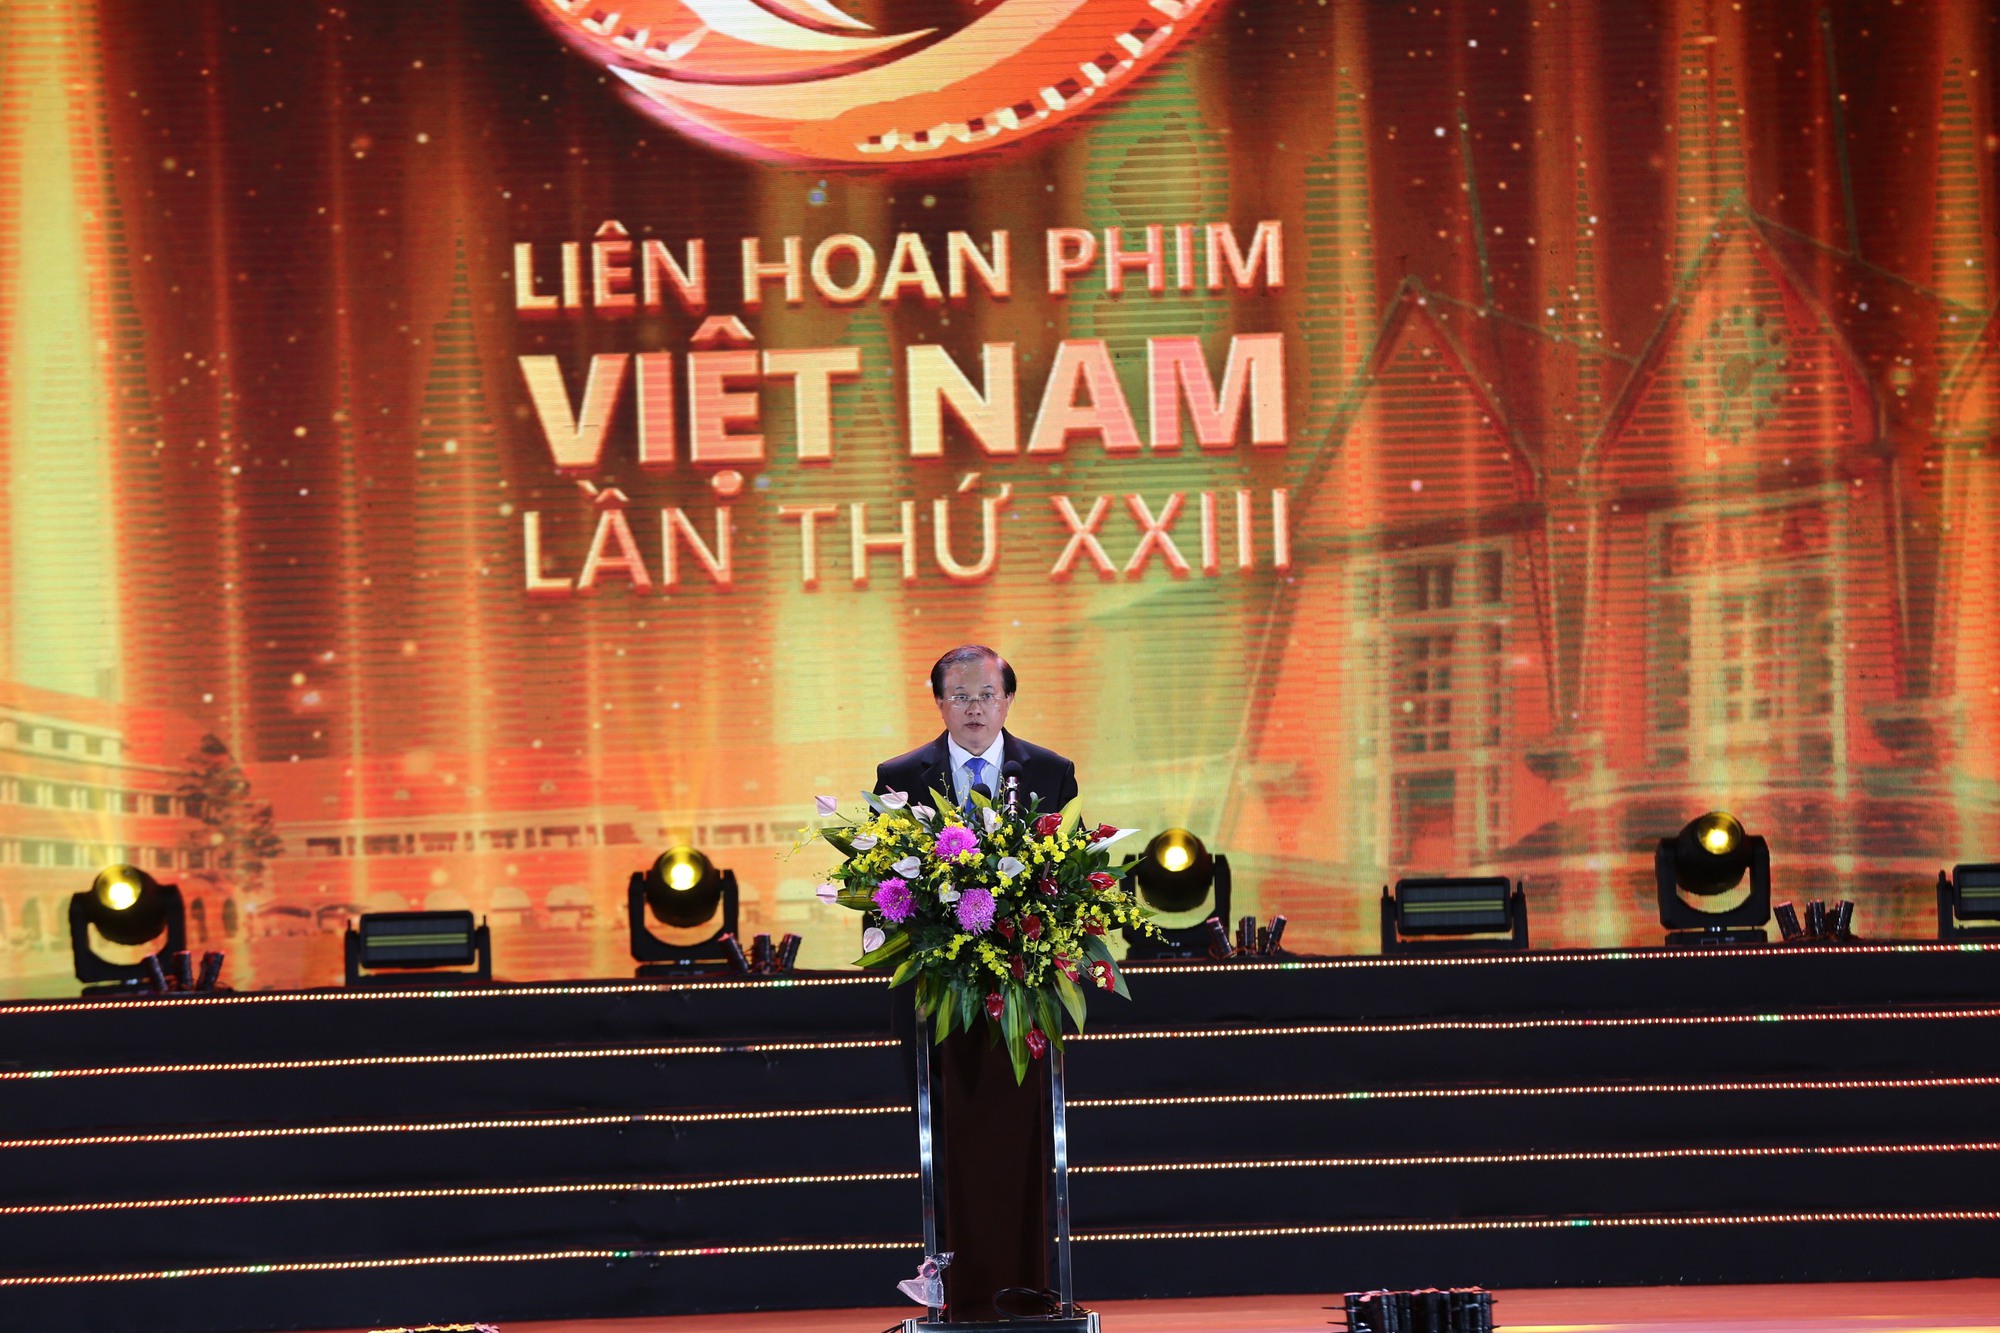 Hàng ngàn người dân Đà Lạt đến xem liên hoan phim Việt Nam dưới cái lạnh 17 độ - Ảnh 3.